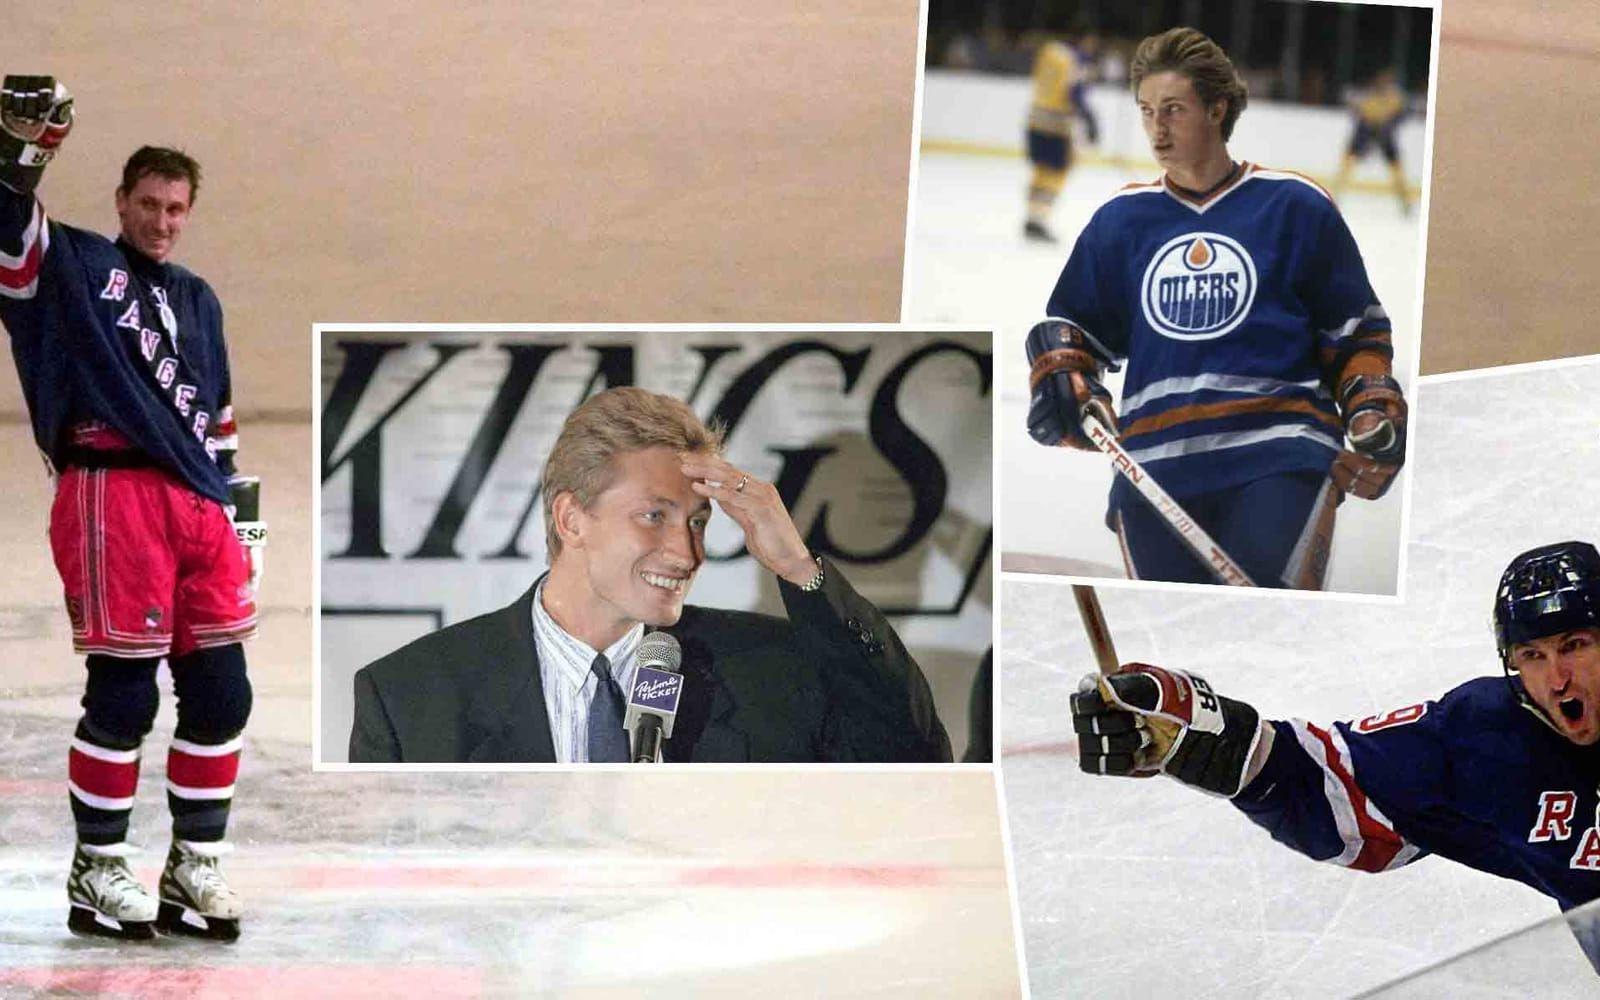 Världens bäste ishockeyspelare genom tiderna, Wayne Gretzky, kan vara den som höll på med flest märkliga grejer. Han satte på sig utrustningen i en speciell ordning, sköt första uppvärmningsskottet långt utanför (till höger), sedan började avslutade han med två riktigt konstiga ritualer. Han drack ett glas sockerfri cola, ett glas isvatten, en sportdryck och sedan ytterligare ett glas sockerfri cola. Strax före matchstart kastade han lite babypuder på sin ishockeyklubba. Gretzky förklarade det sistnämnda med att det gäller att ta hand om det som tar hand om dig. Foto: TT